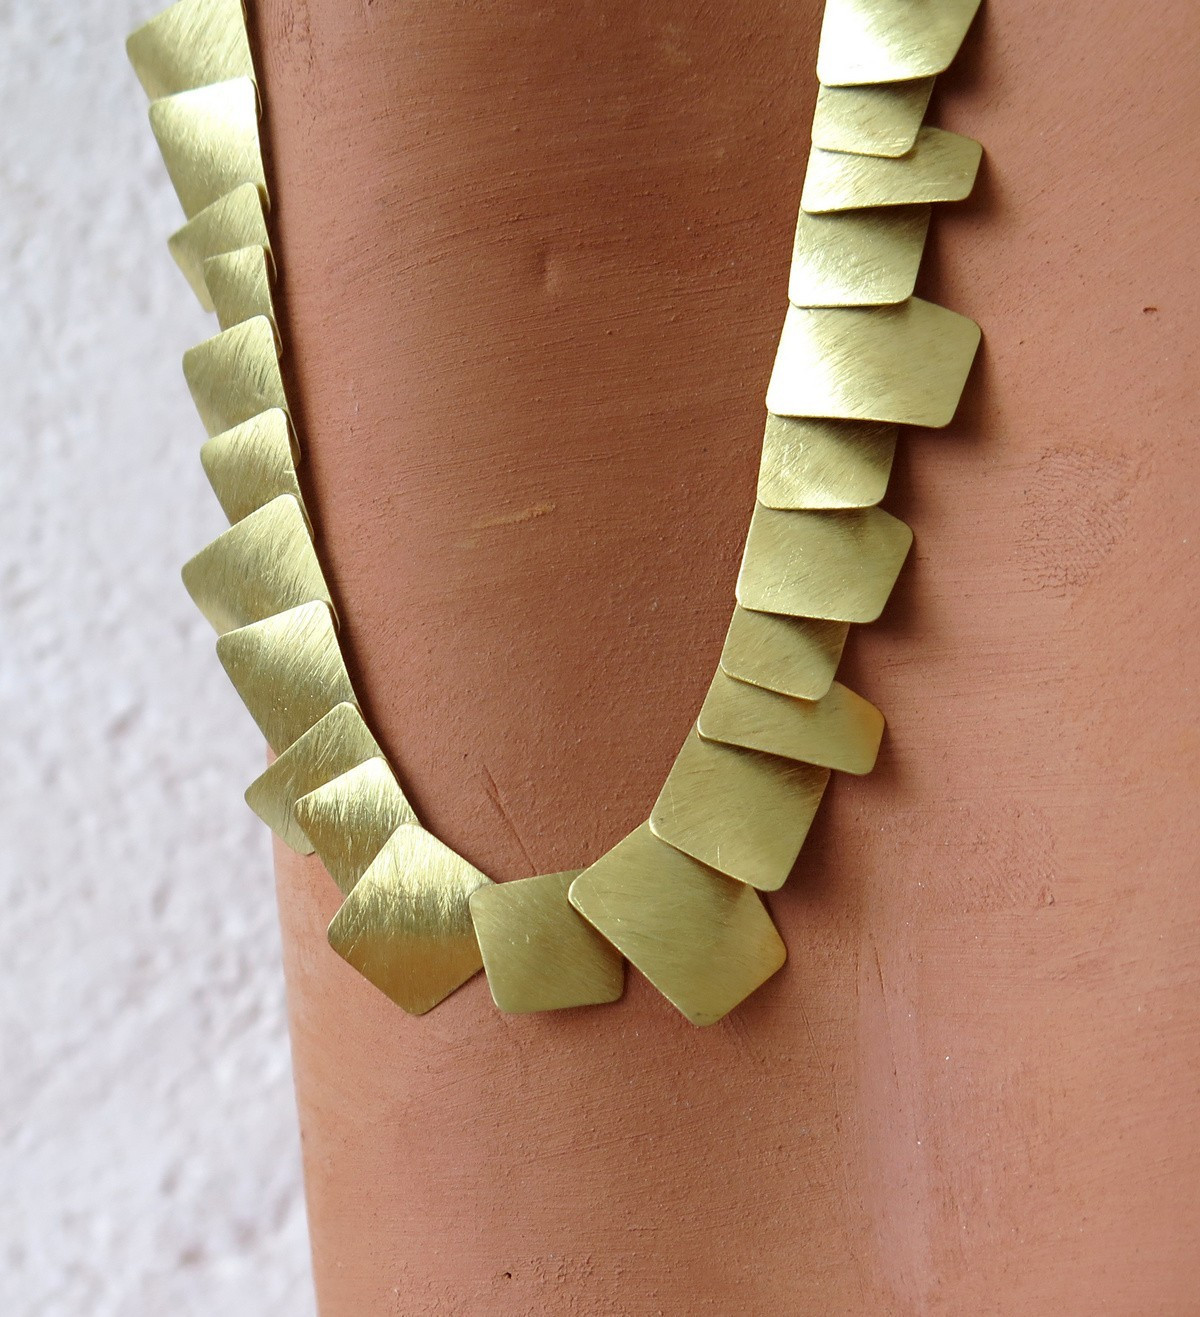 18k gold necklace Aire 42cm